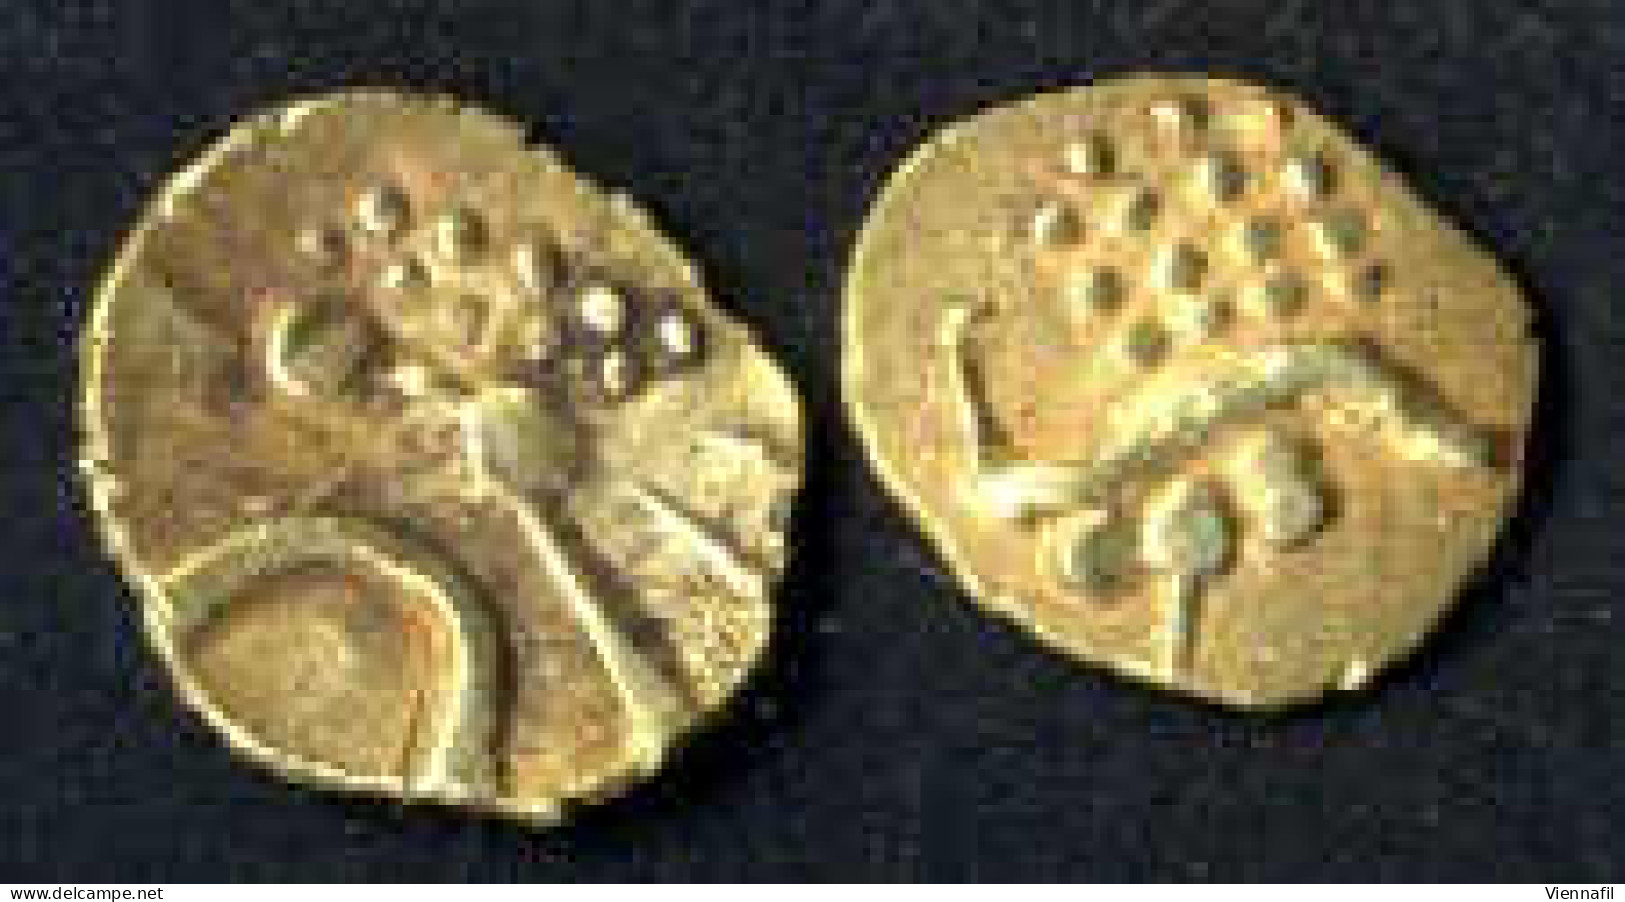 Cochin, Rajahsv. Cochin, 1600-1750, Fanam Gold Ohne Jahr Und Münzstätte, Mich NI&amp;CS 1126ff, Vorzüglich 2 Stück - Indien